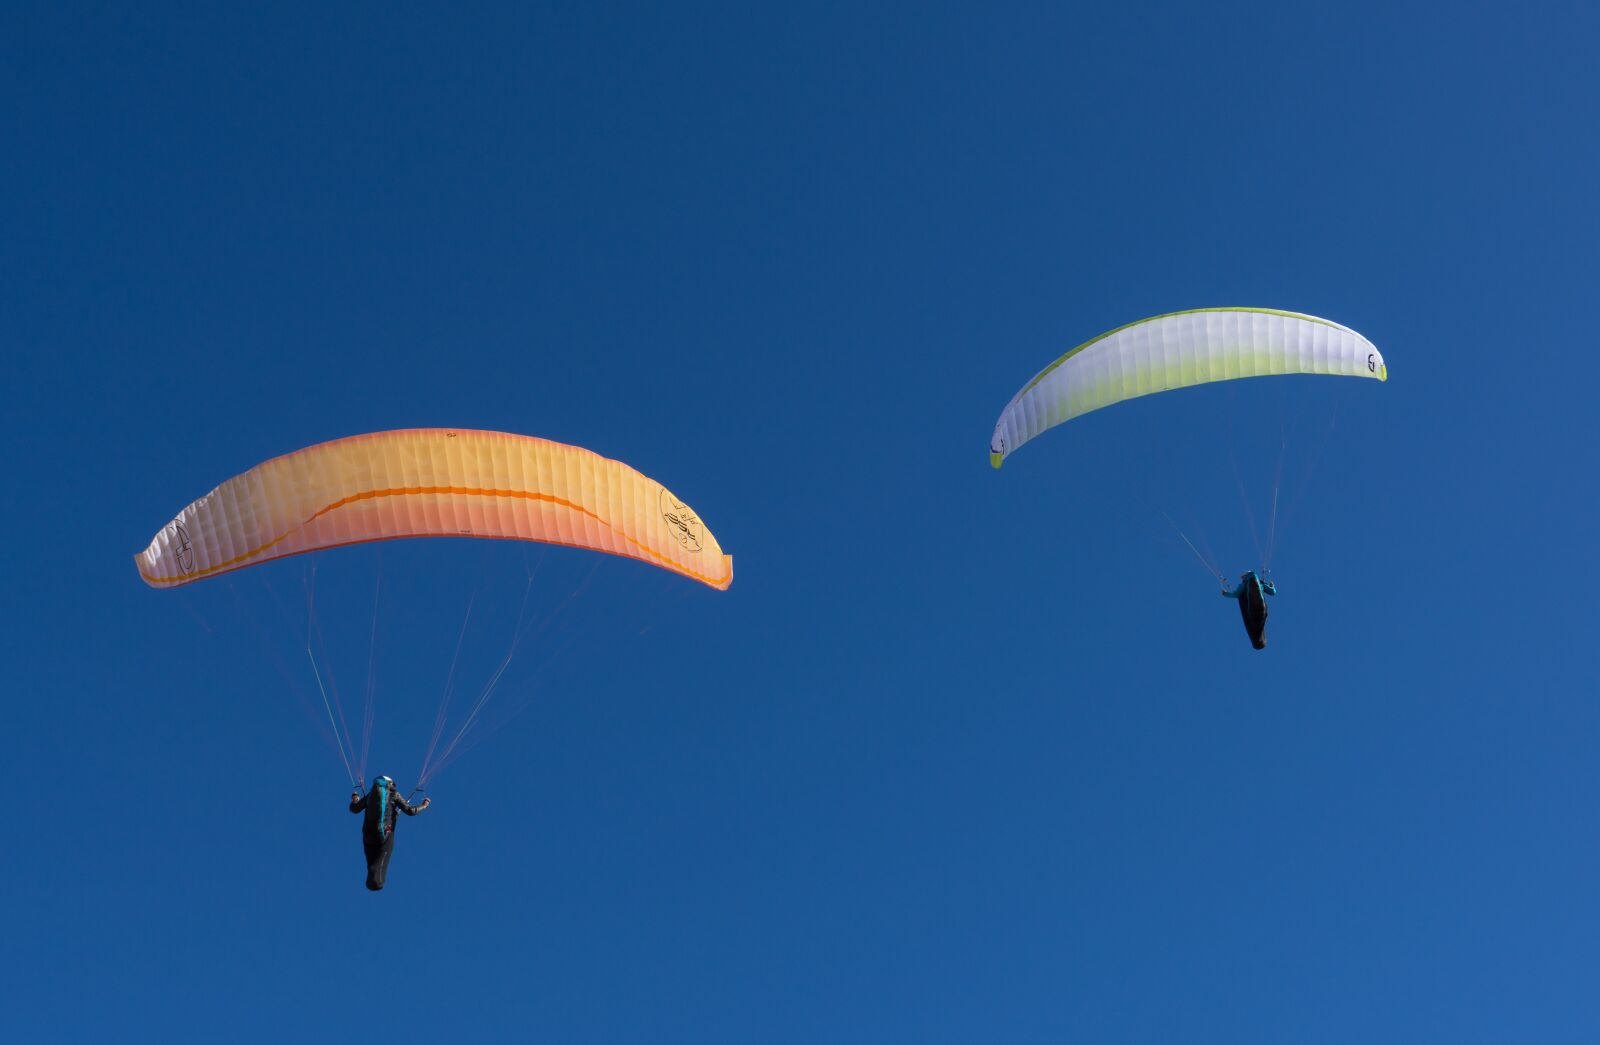 Sony a7R sample photo. Parachute, air, flight photography